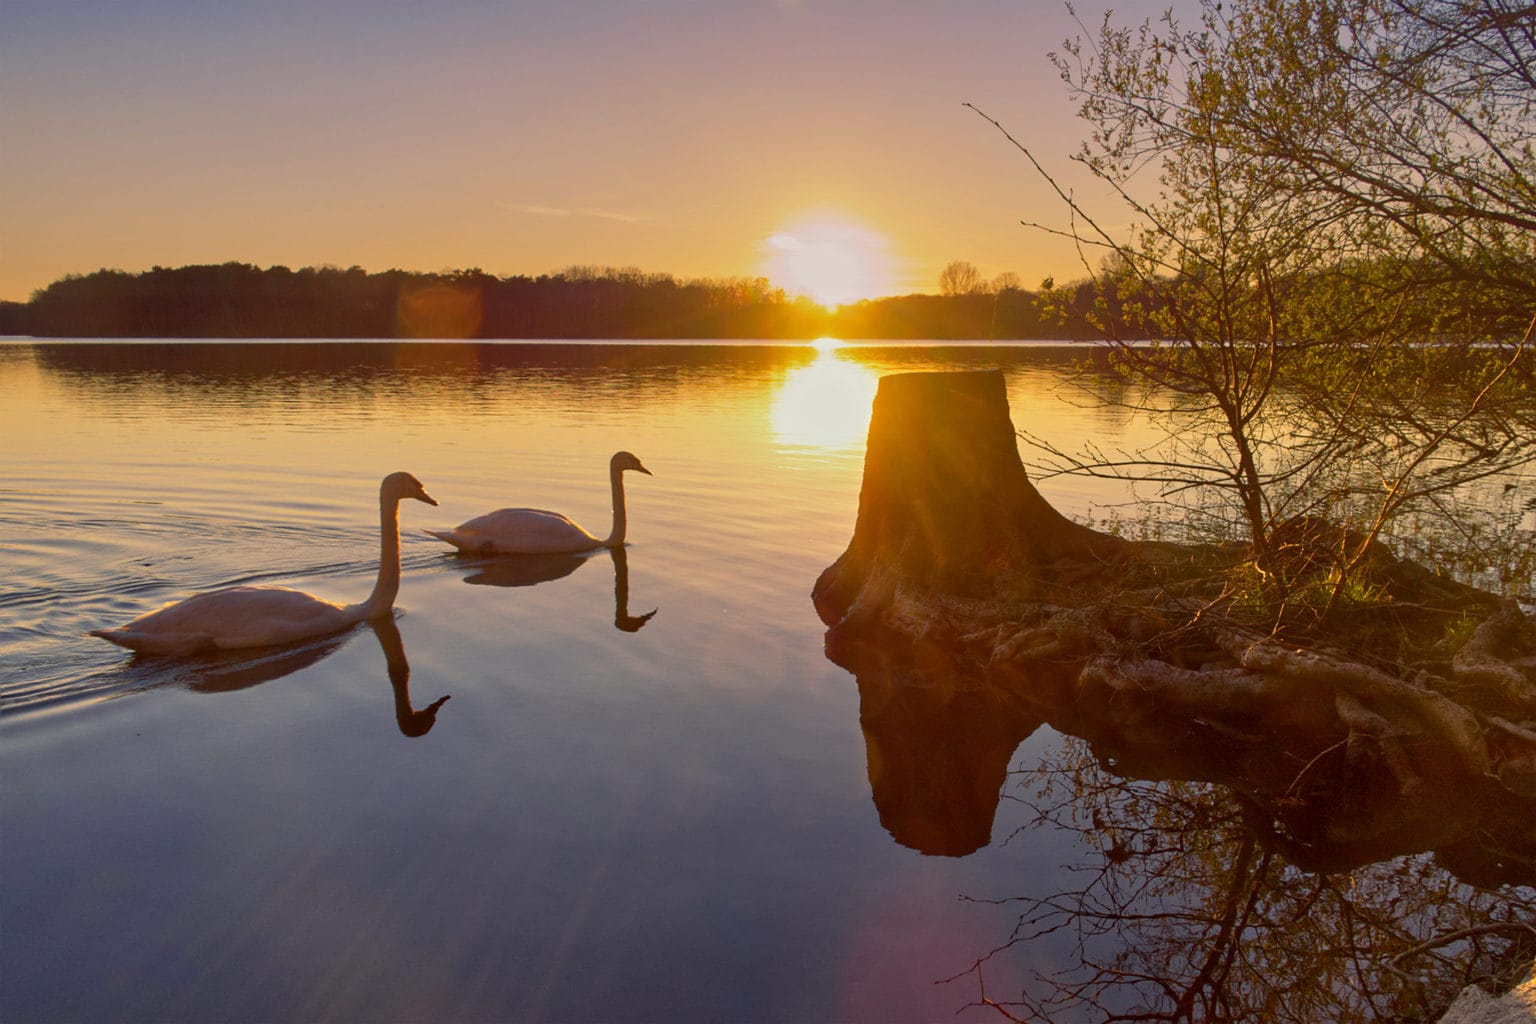 Twee zwanen op de Sechs-Seen-Platte in Duisburg tijdens de zonsondergang